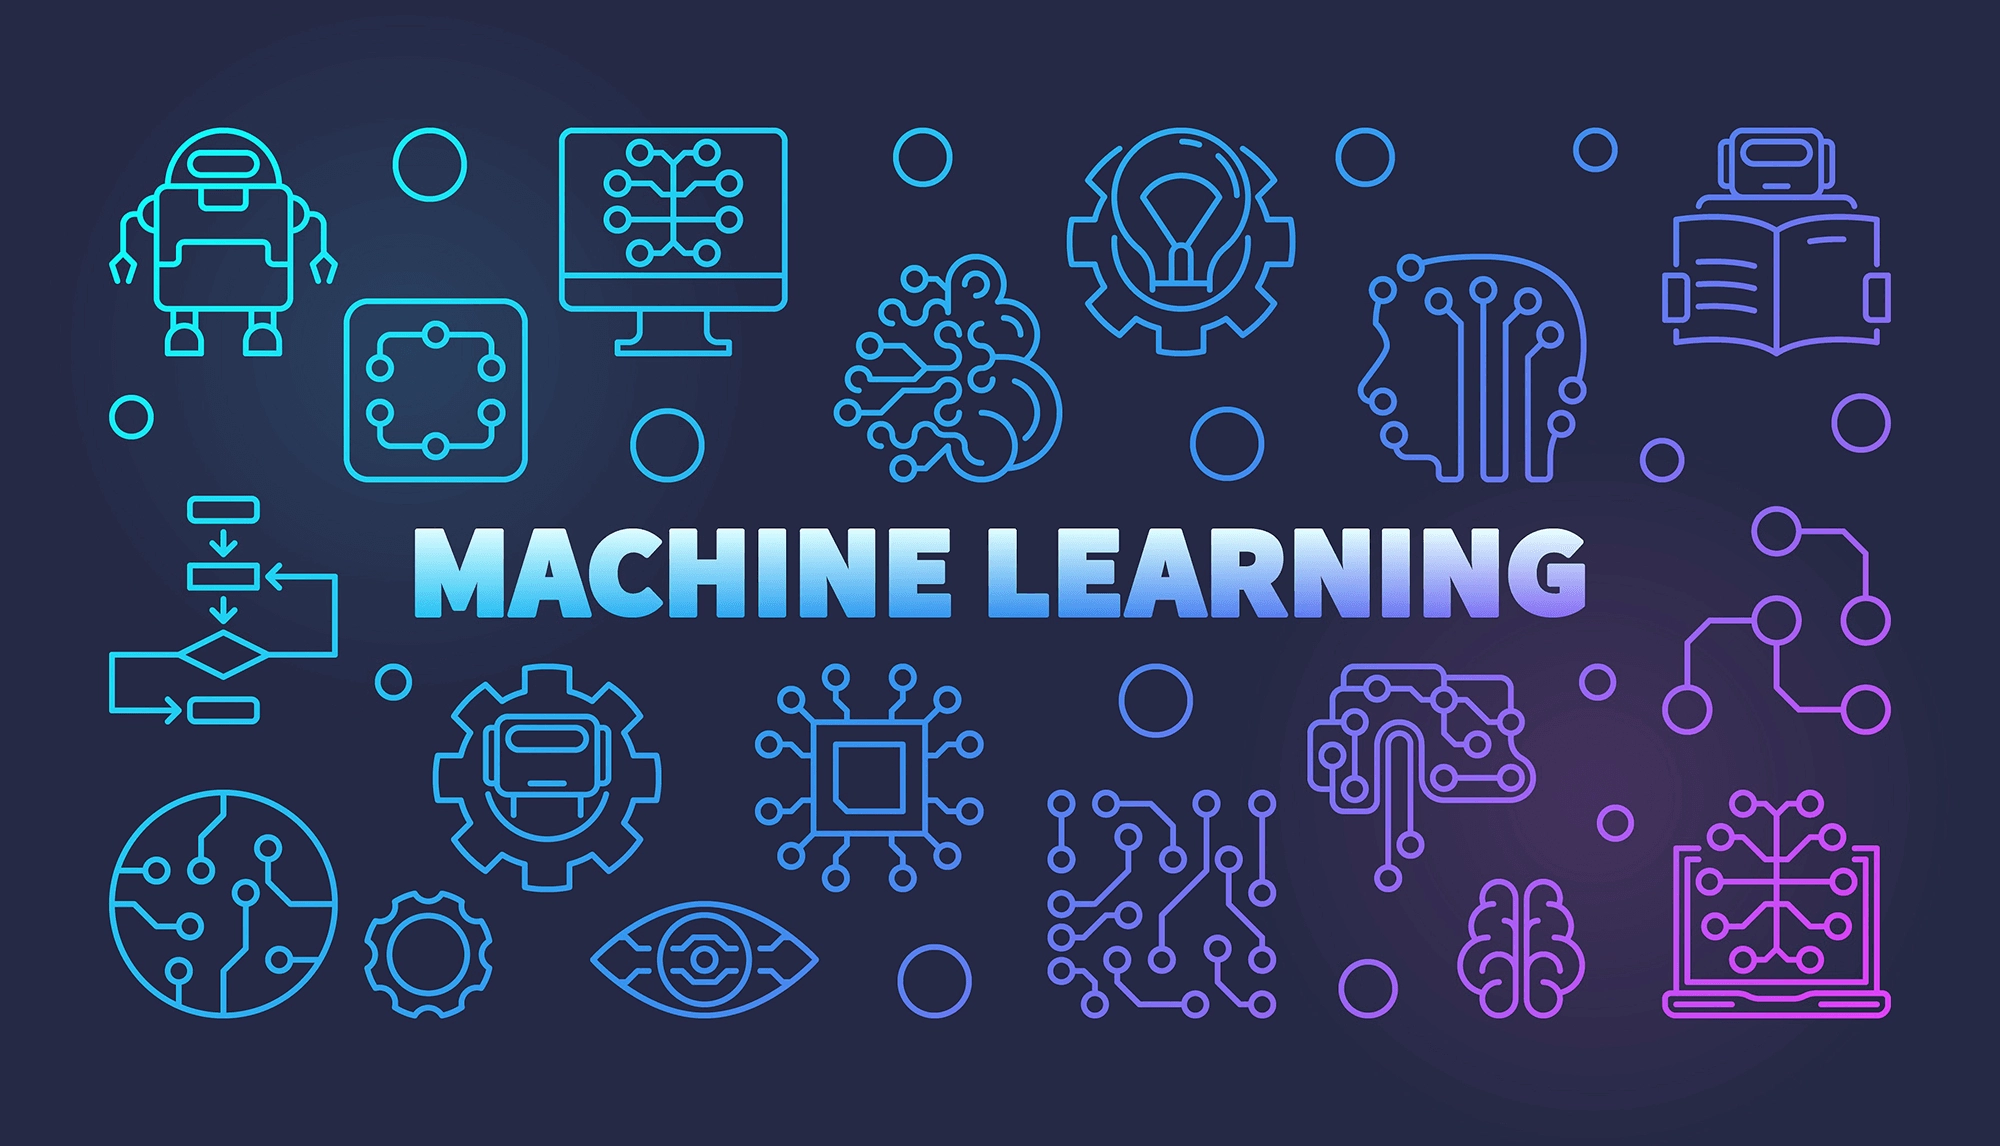 یادگیری ماشین چیست؟